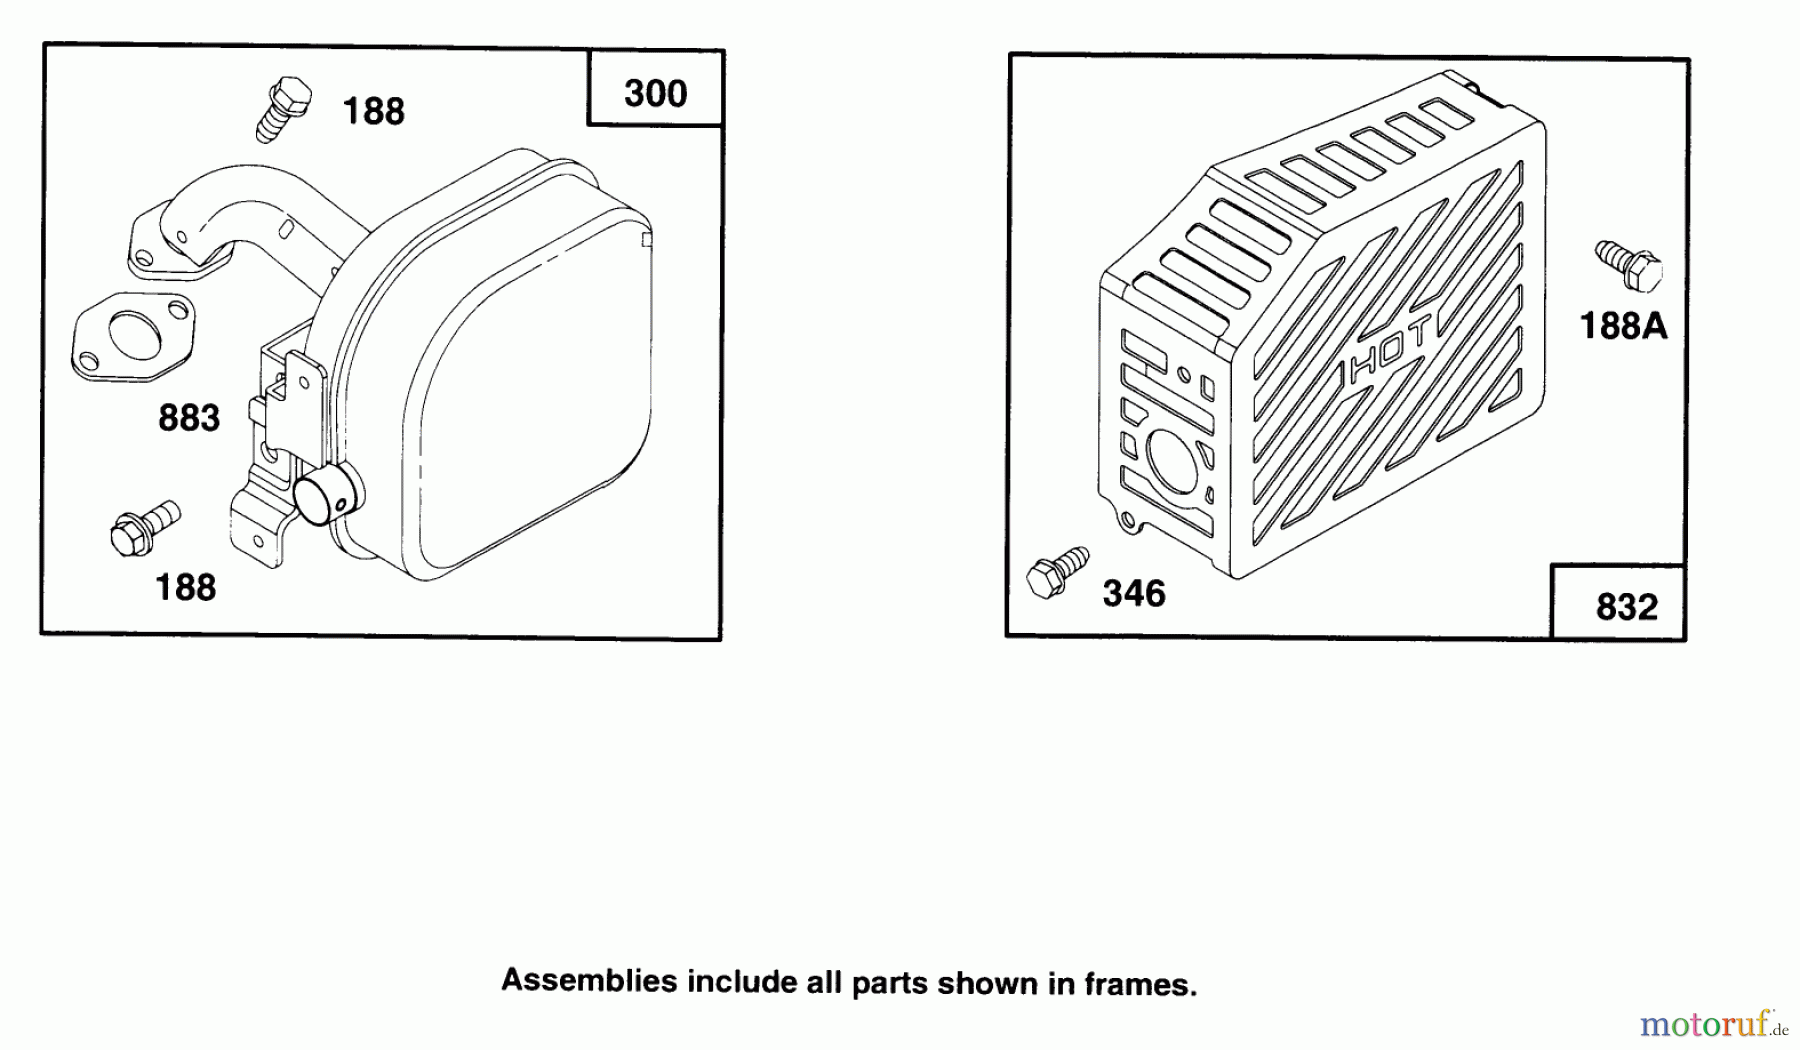  Toro Neu Mowers, Walk-Behind Seite 2 22150 - Toro Lawnmower, 1996 (6900001-6999999) ENGINE GTS 150 #7